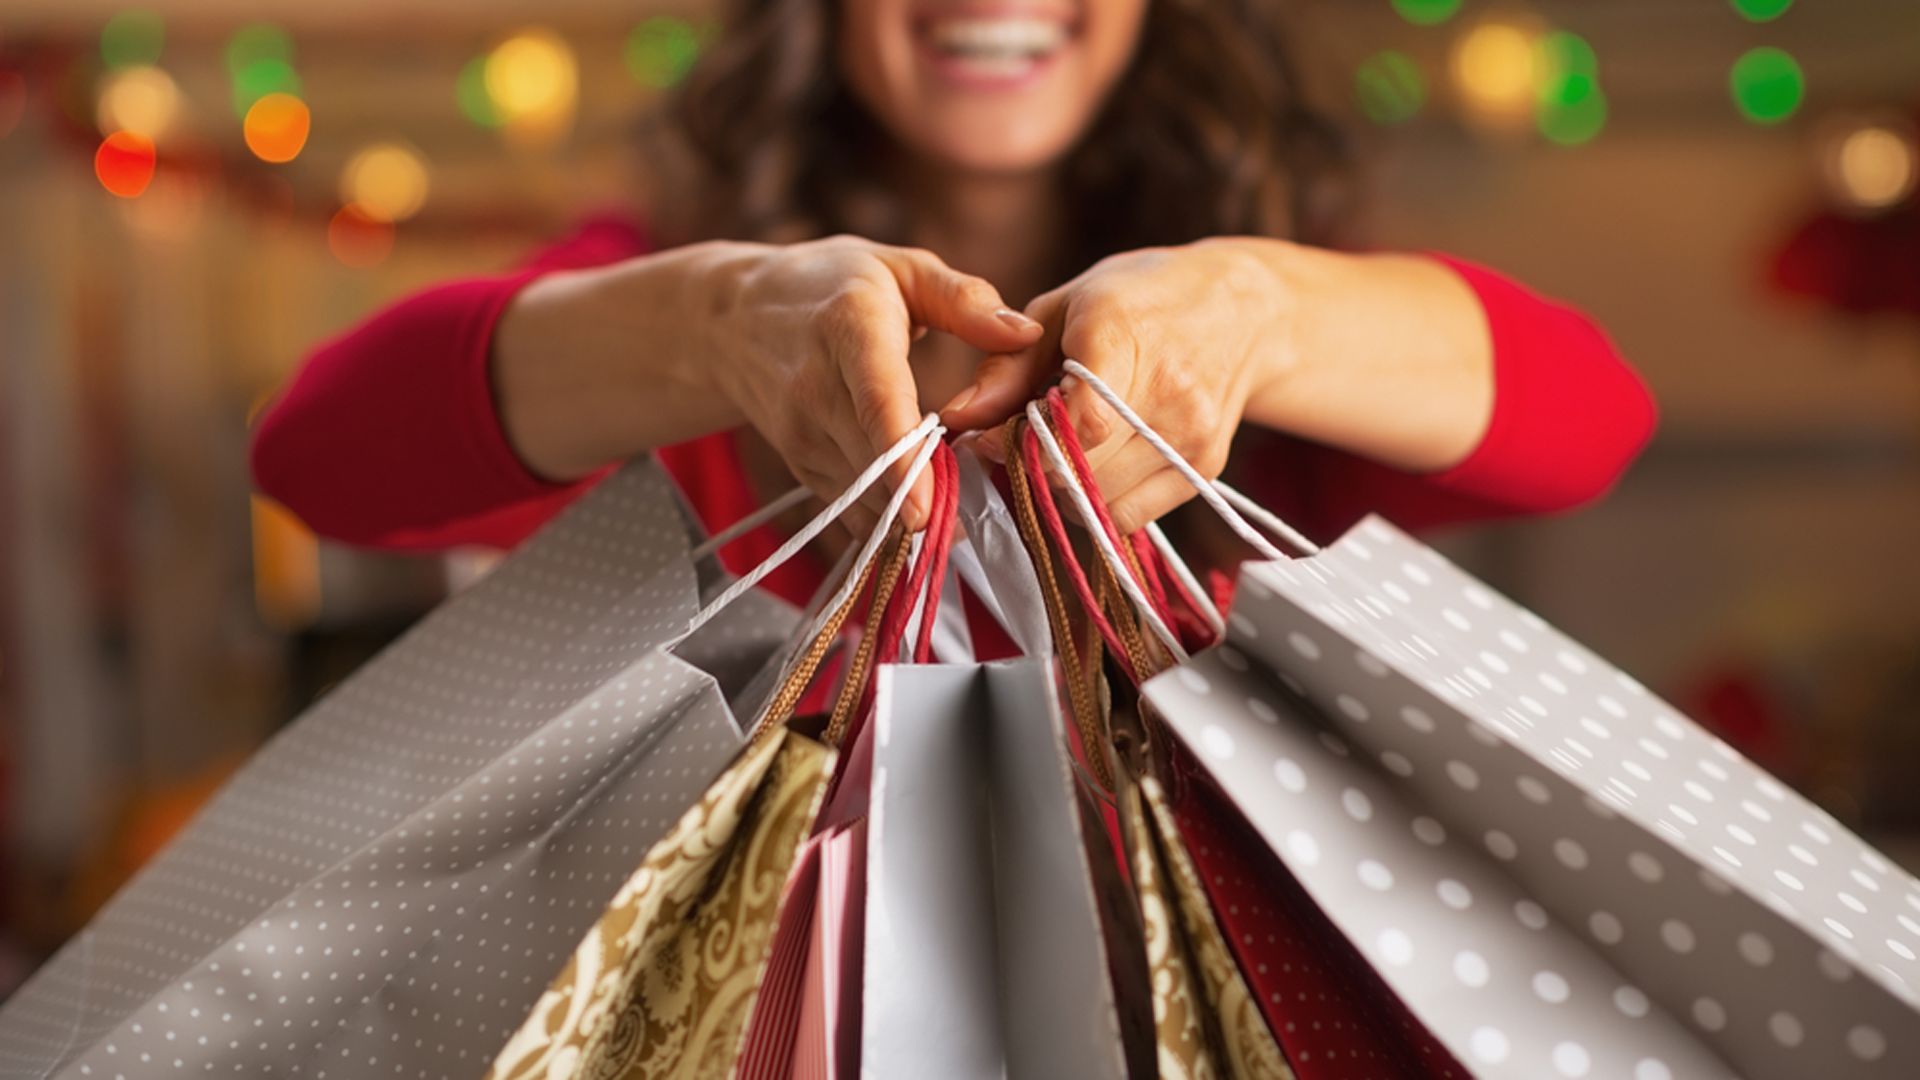 Compras navideñas con las nuevas tendencias en productos y formas de comprar.